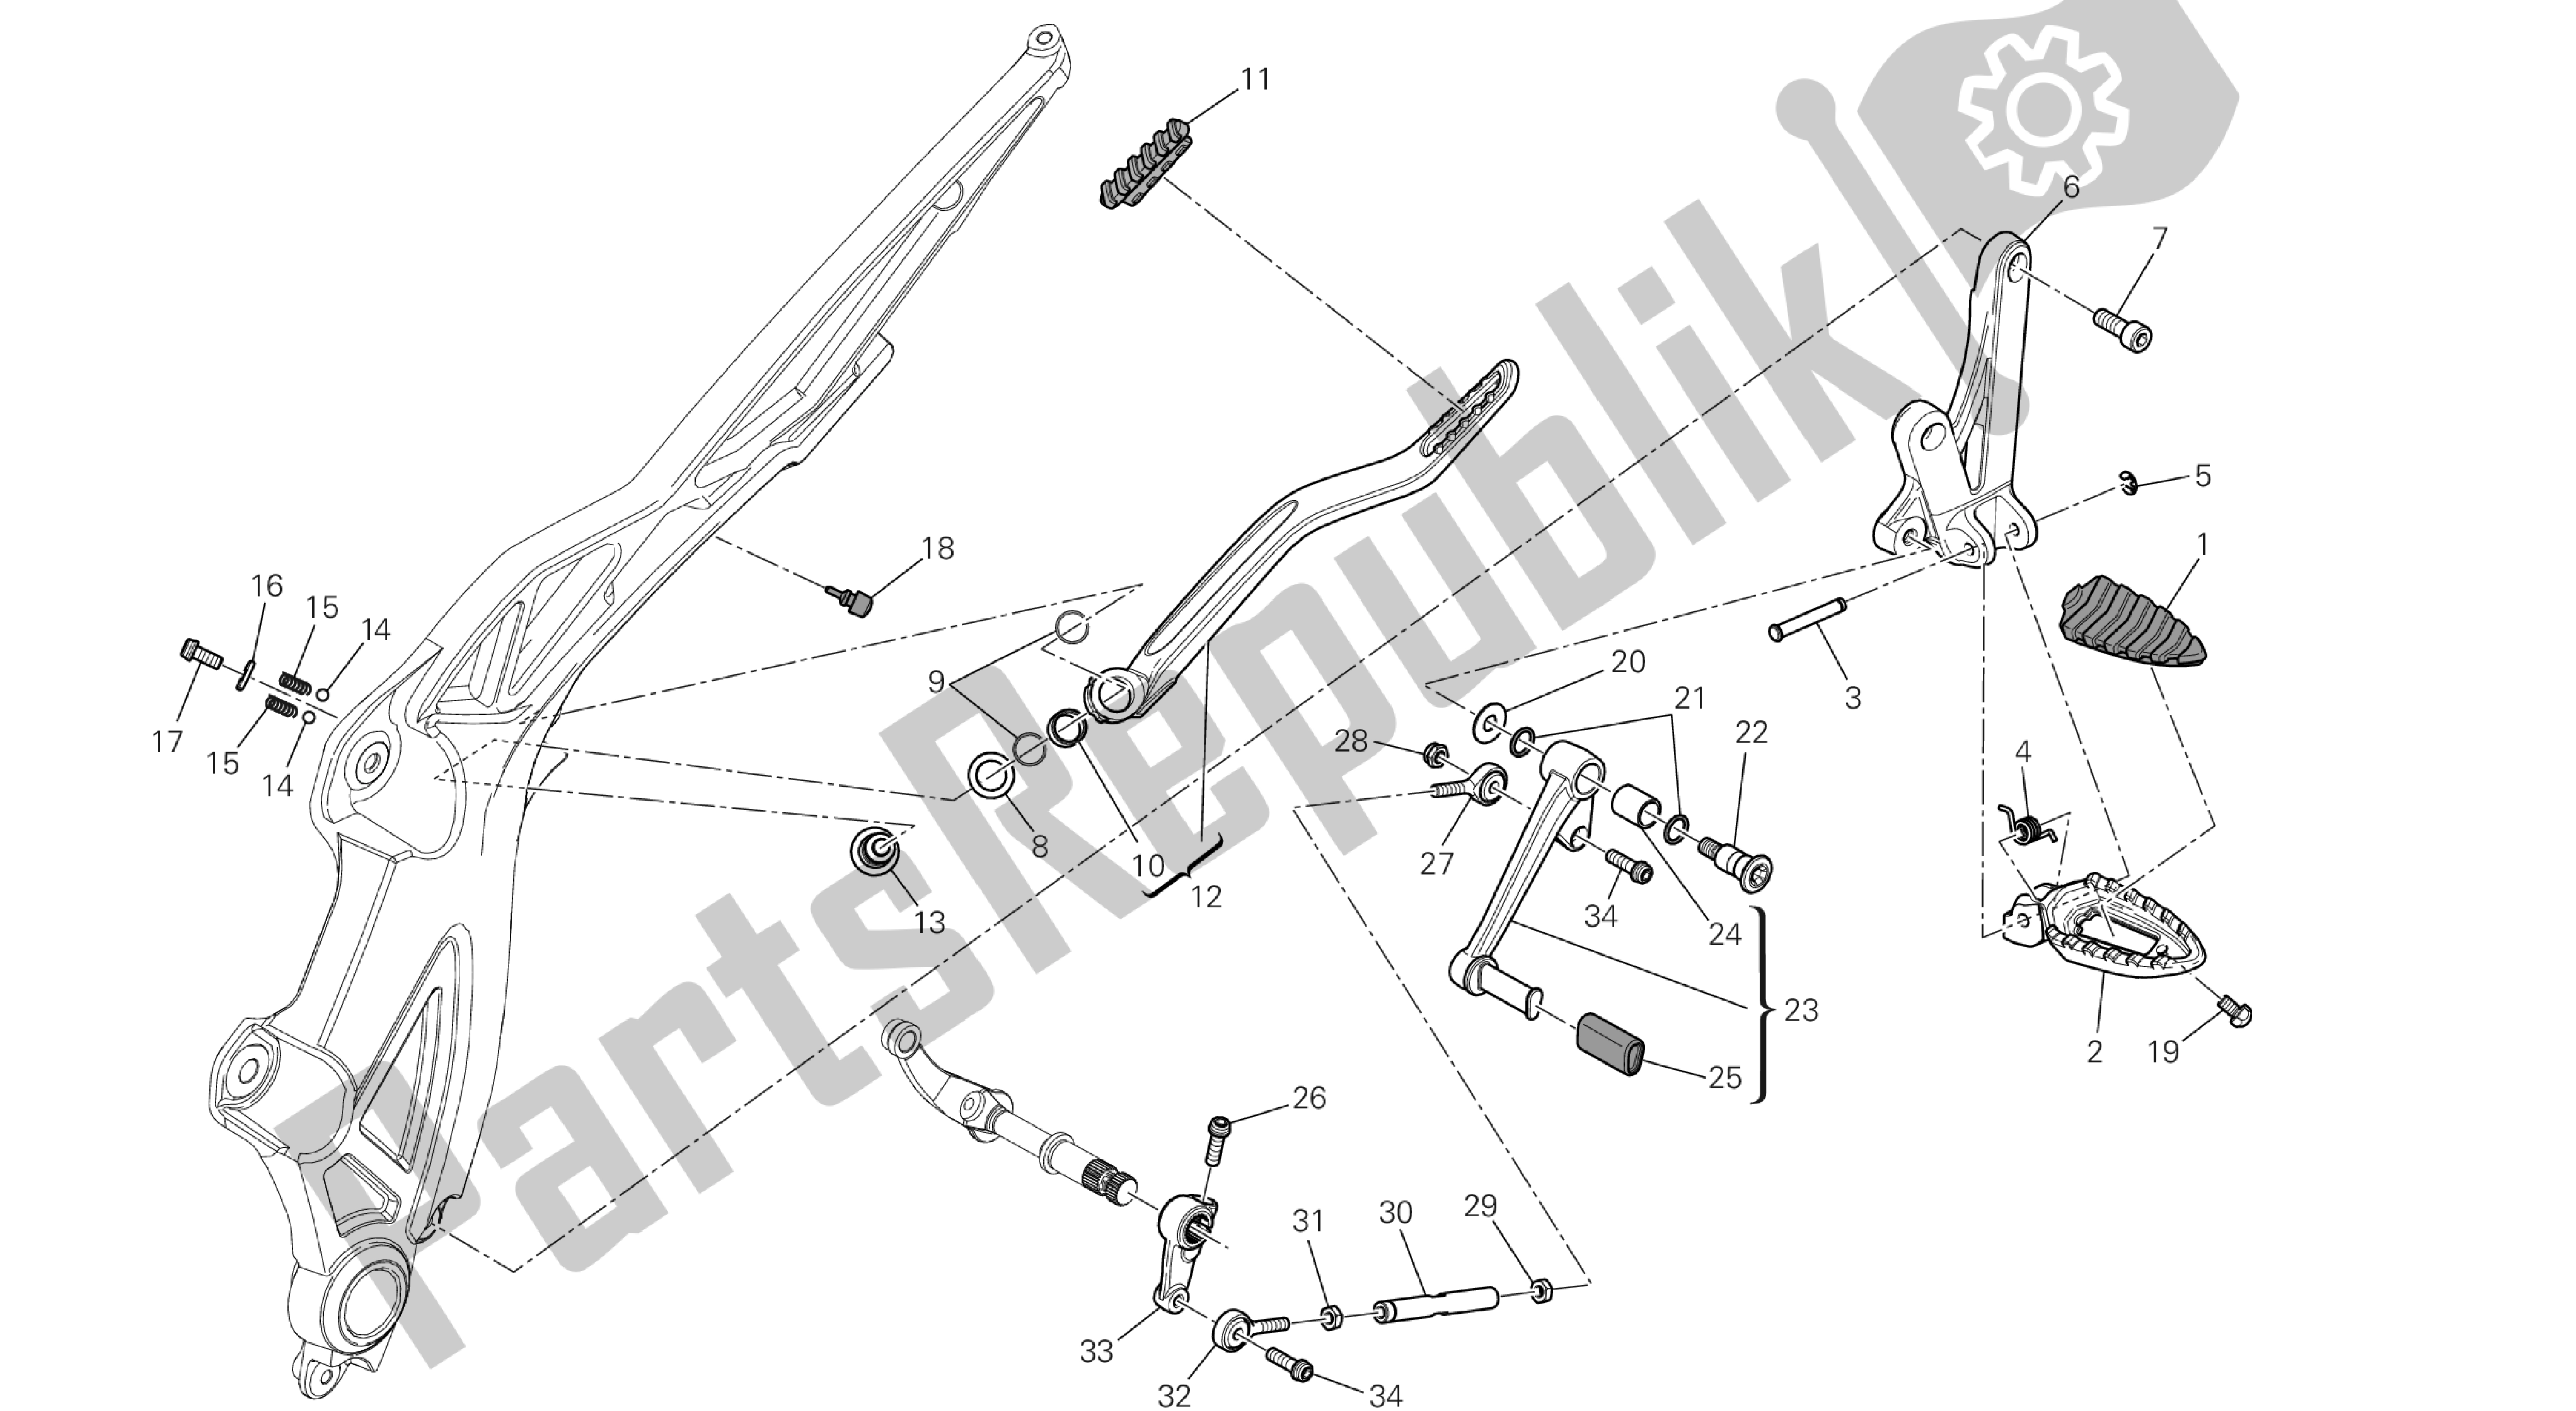 Tutte le parti per il Disegno 22c - Poggiapiedi, Sinistra [mod: Dvl; Xs T: A Us, Bra, Ch N, E Ur, F Ra, Jap, Th Ai] Group Fr Ame del Ducati Diavel 1200 2013